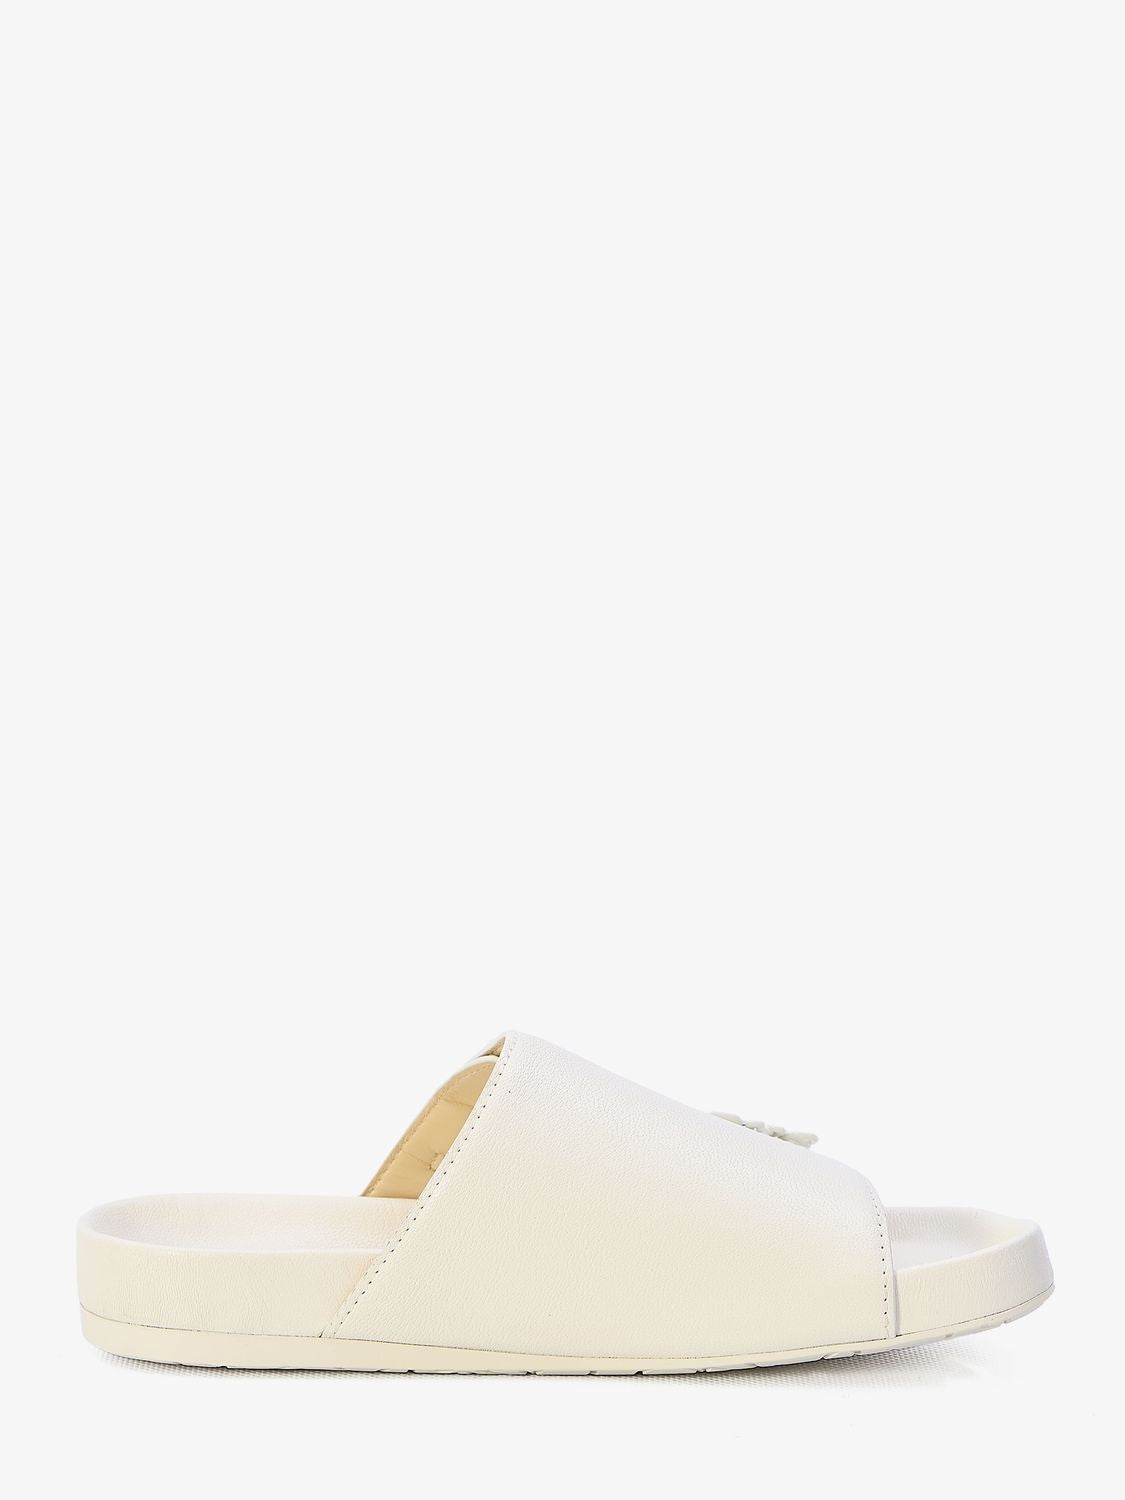 調節式白色羊皮涼鞋，附有標誌扣環和壓花鞋底